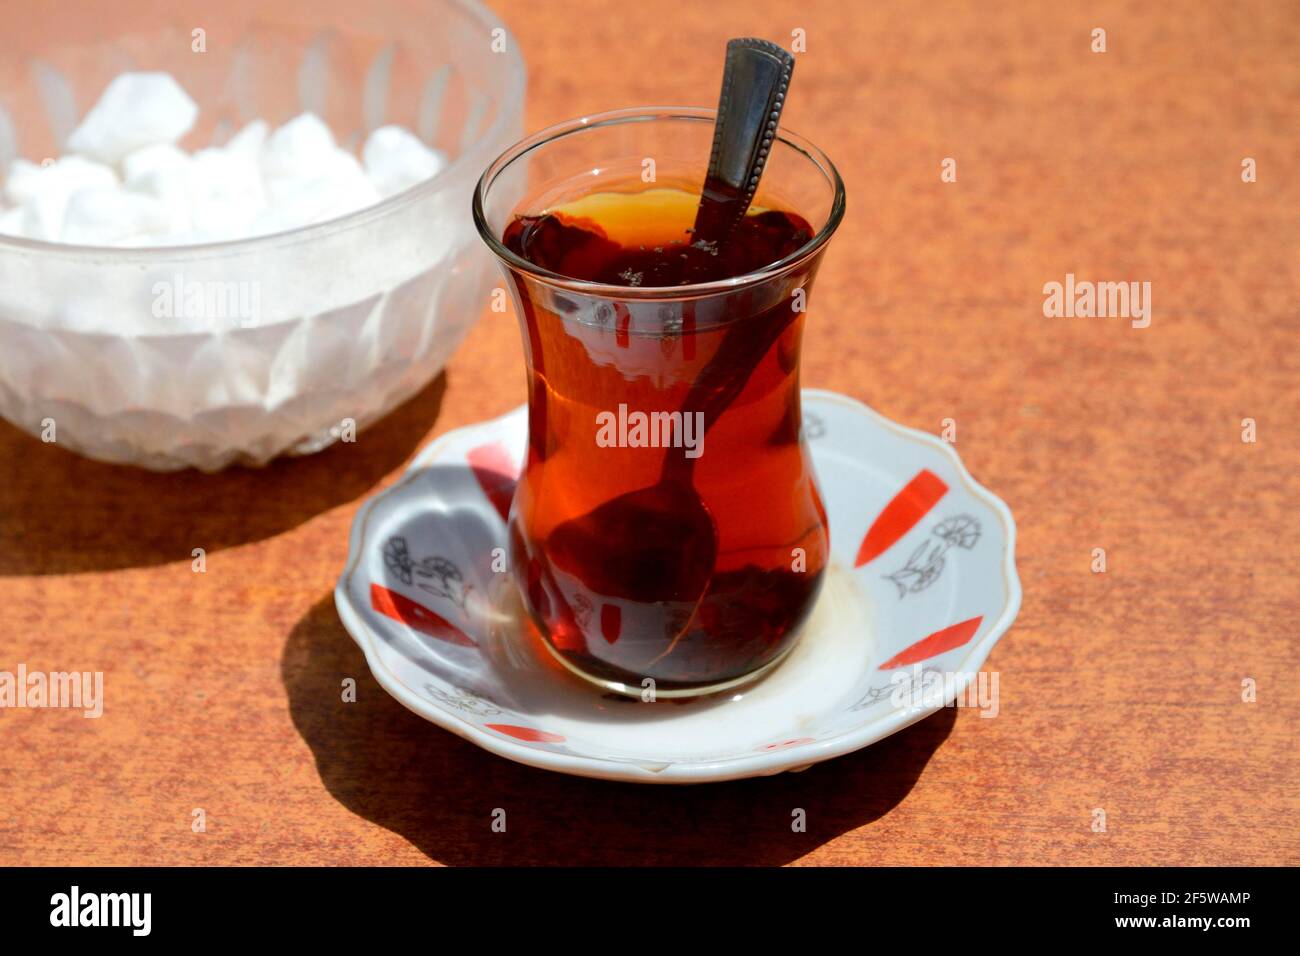 Turkish tea glass with tea, Turkey Stock Photo